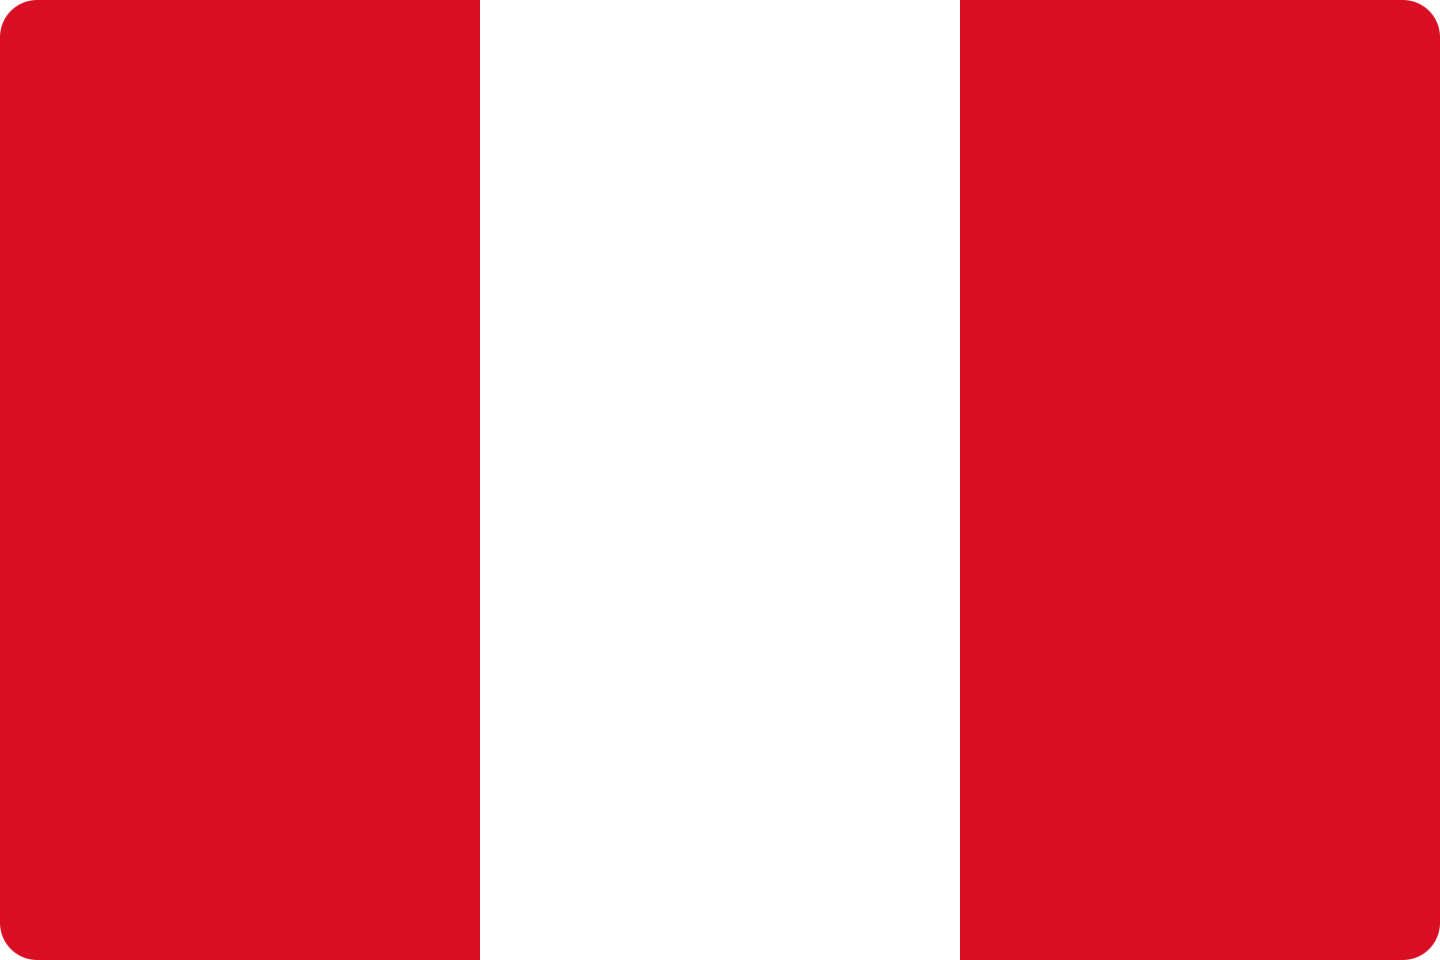 bandeira peru flag 2 - Flag of Peru